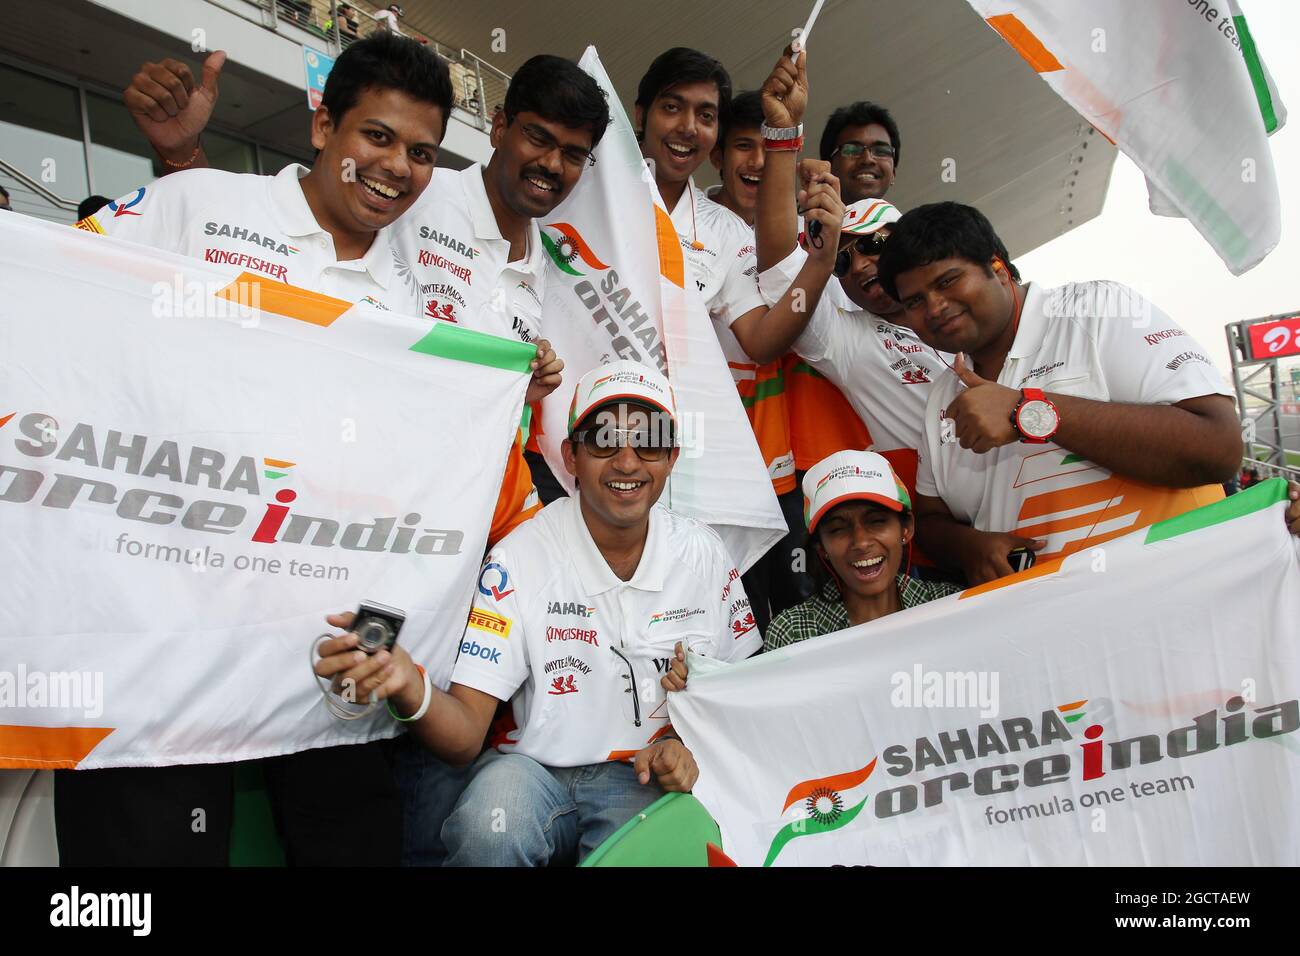 Sahara Force India F1 Team fans dans la tribune. Grand Prix d'Inde, samedi 26 octobre 2013. Grande Noida, New Delhi, Inde. Banque D'Images